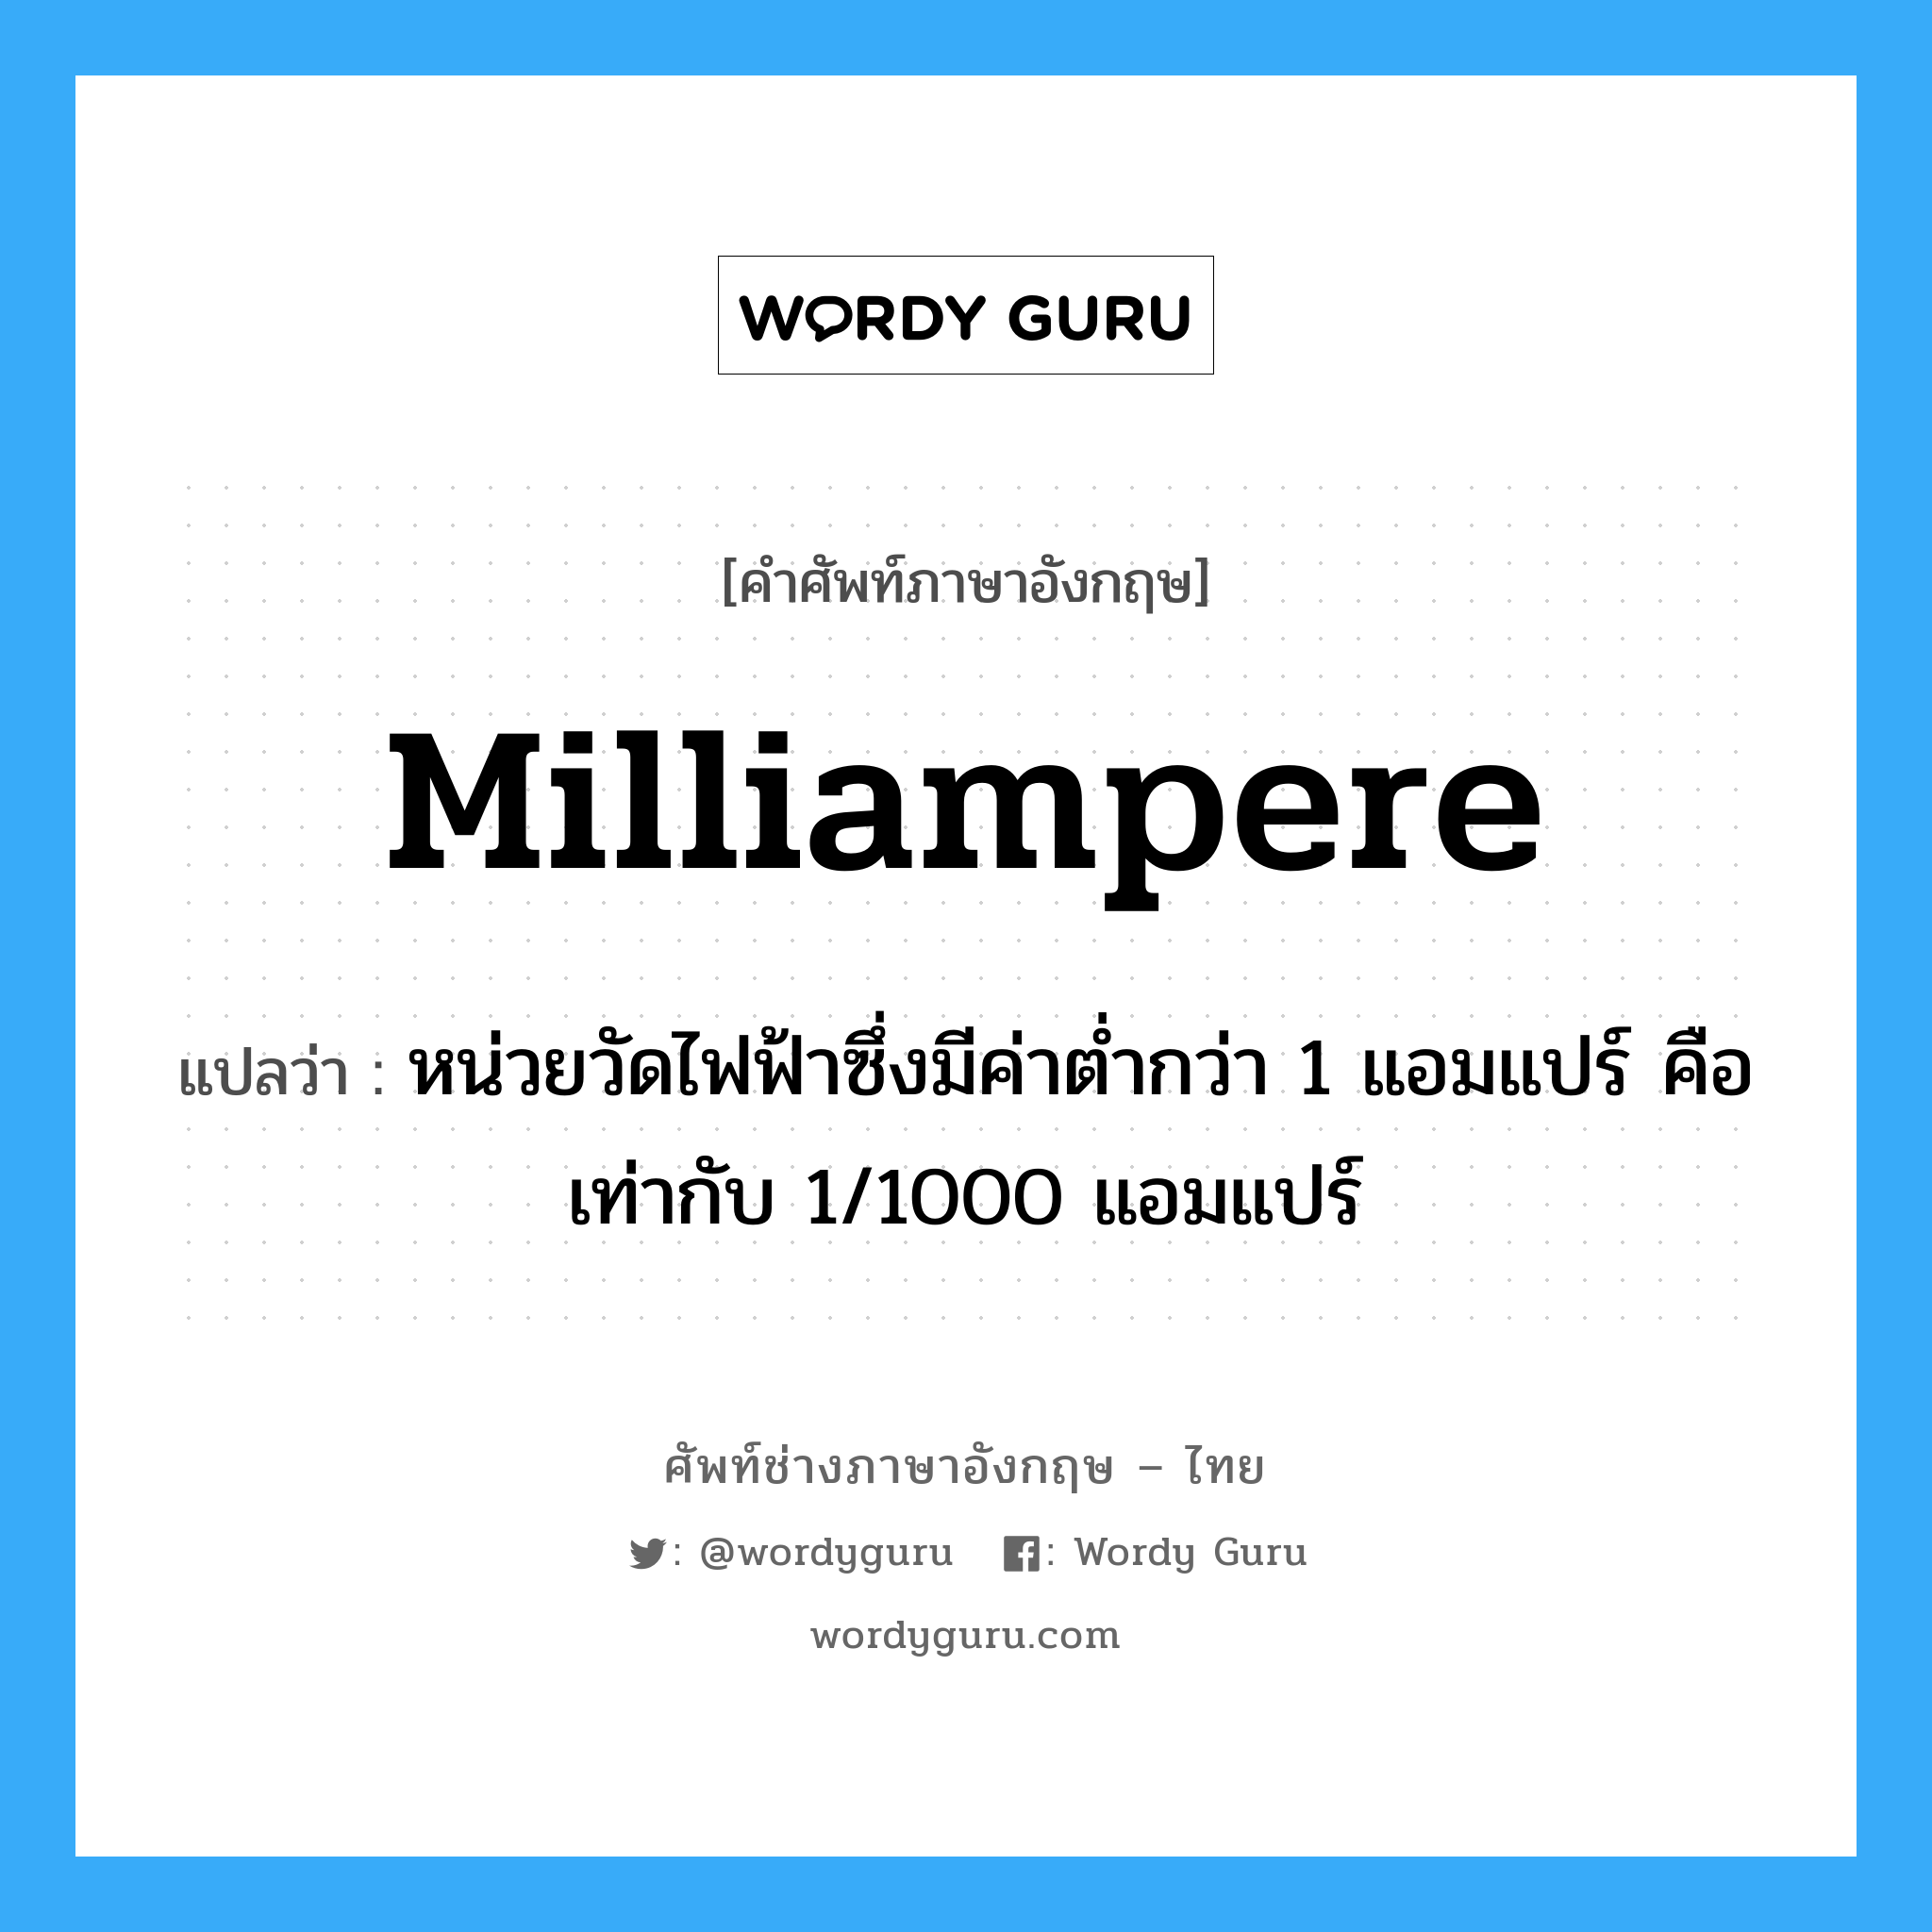 milliampere แปลว่า?, คำศัพท์ช่างภาษาอังกฤษ - ไทย milliampere คำศัพท์ภาษาอังกฤษ milliampere แปลว่า หน่วยวัดไฟฟ้าซึ่งมีค่าต่ำกว่า 1 แอมแปร์ คือเท่ากับ 1/1000 แอมแปร์